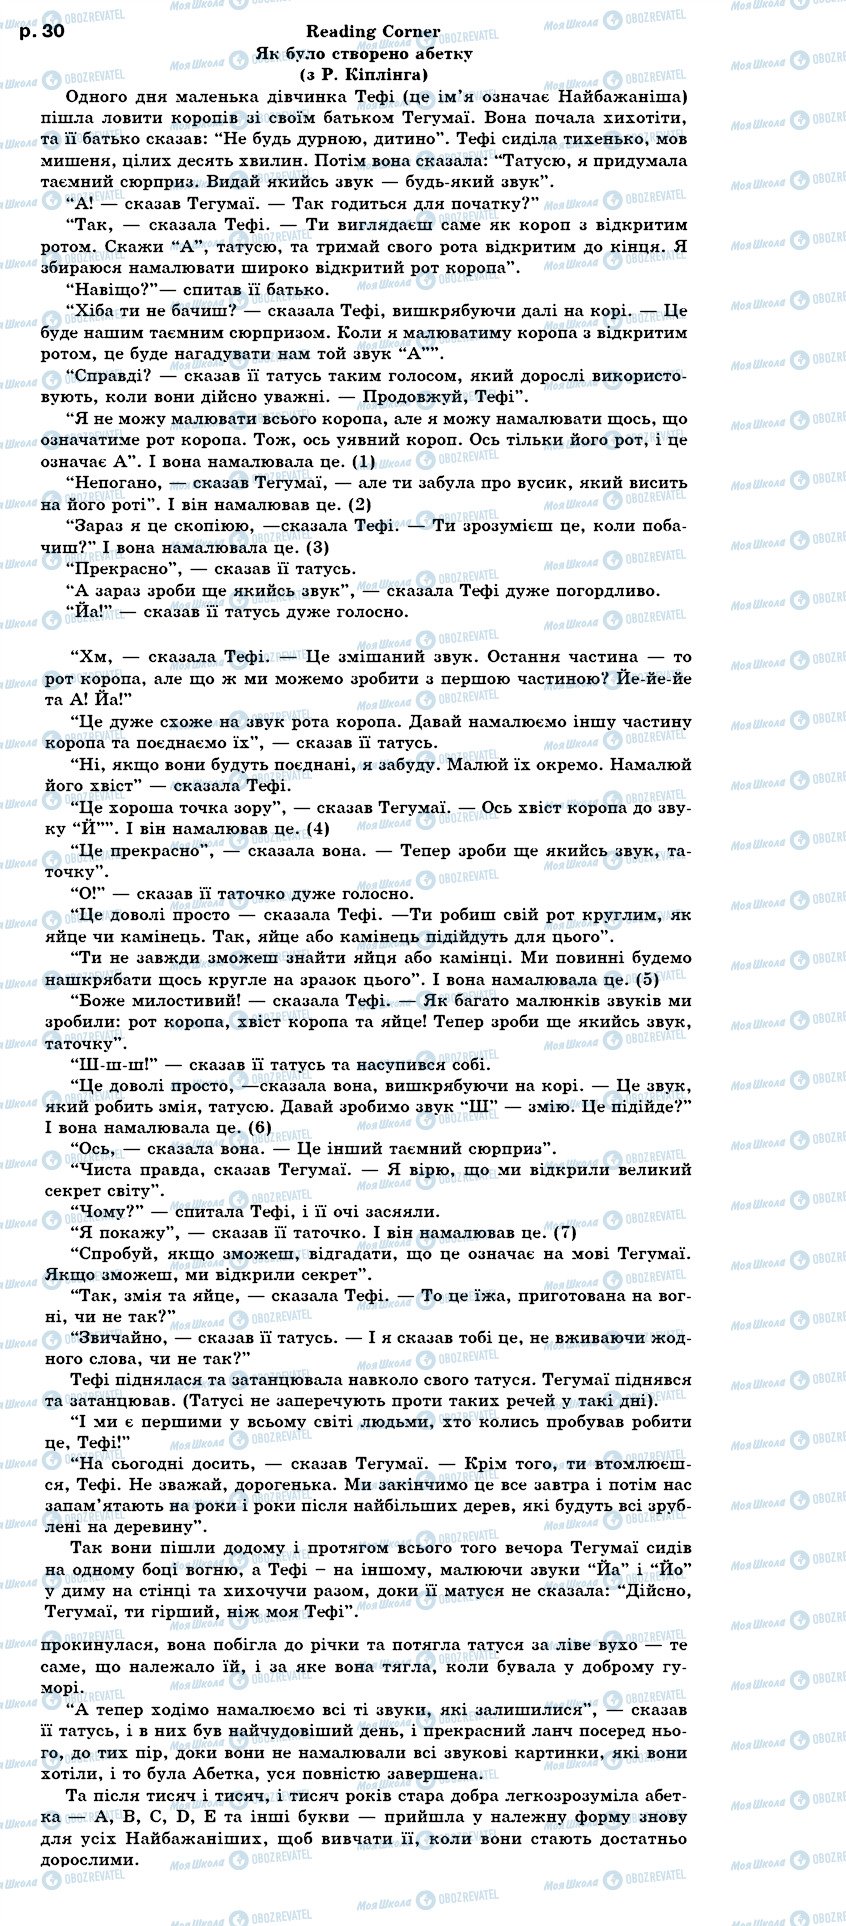 ГДЗ Английский язык 7 класс страница text p30